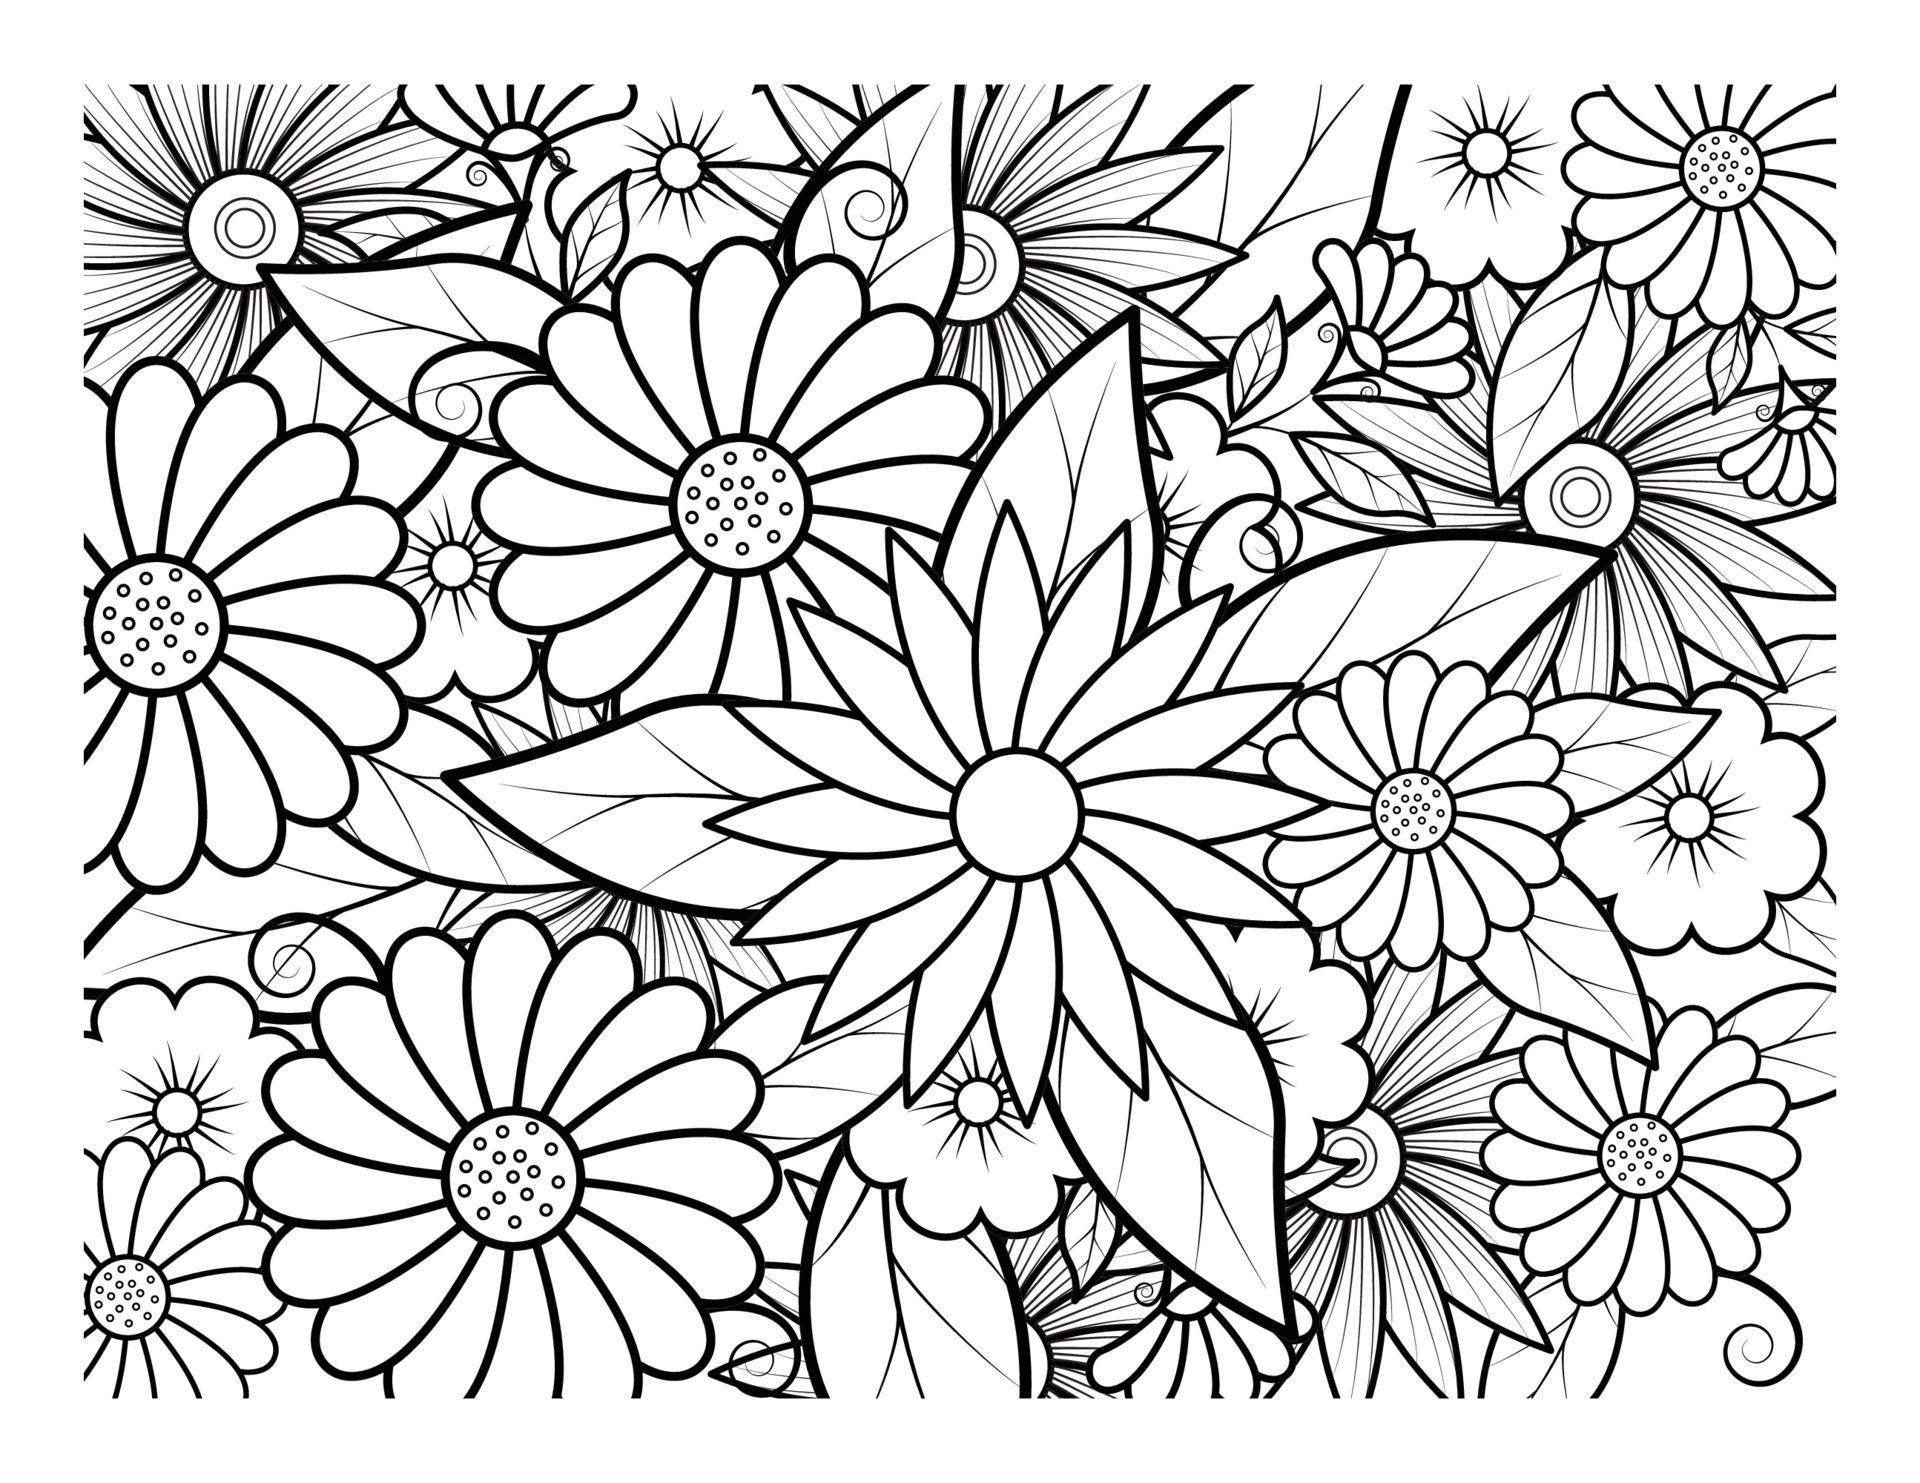 Libro para colorear para adultos y niños mayores página para colorear con  lindo búho y marco floral dibujo de esquema en estilo zentangle